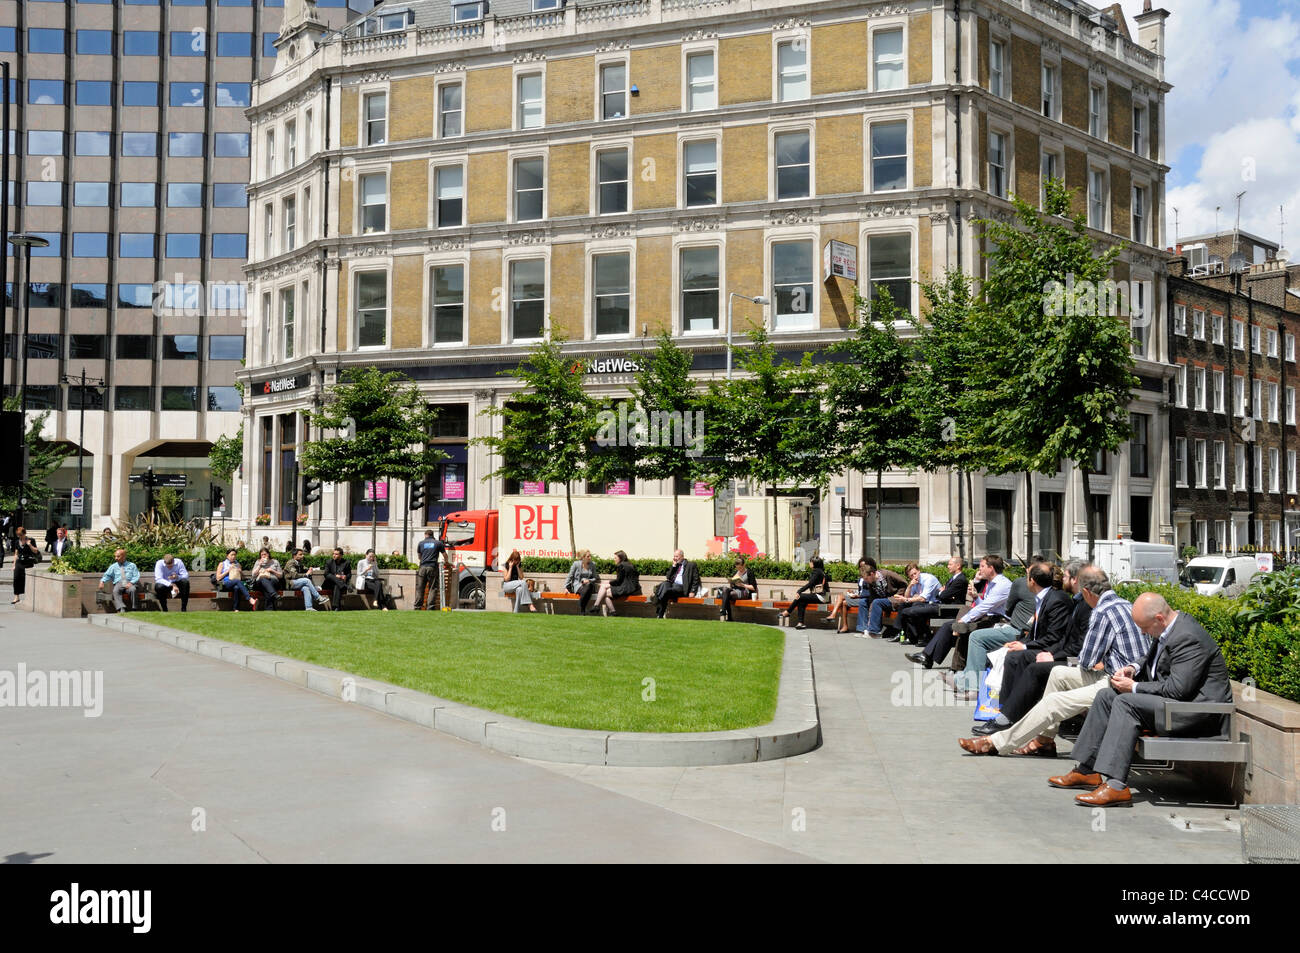 Die Menschen in der Sonne in einem neuen, modernen Dreieck geformt öffentlichen Sitzbereich oder open space Holborn Circus London England Großbritannien UK Stockfoto